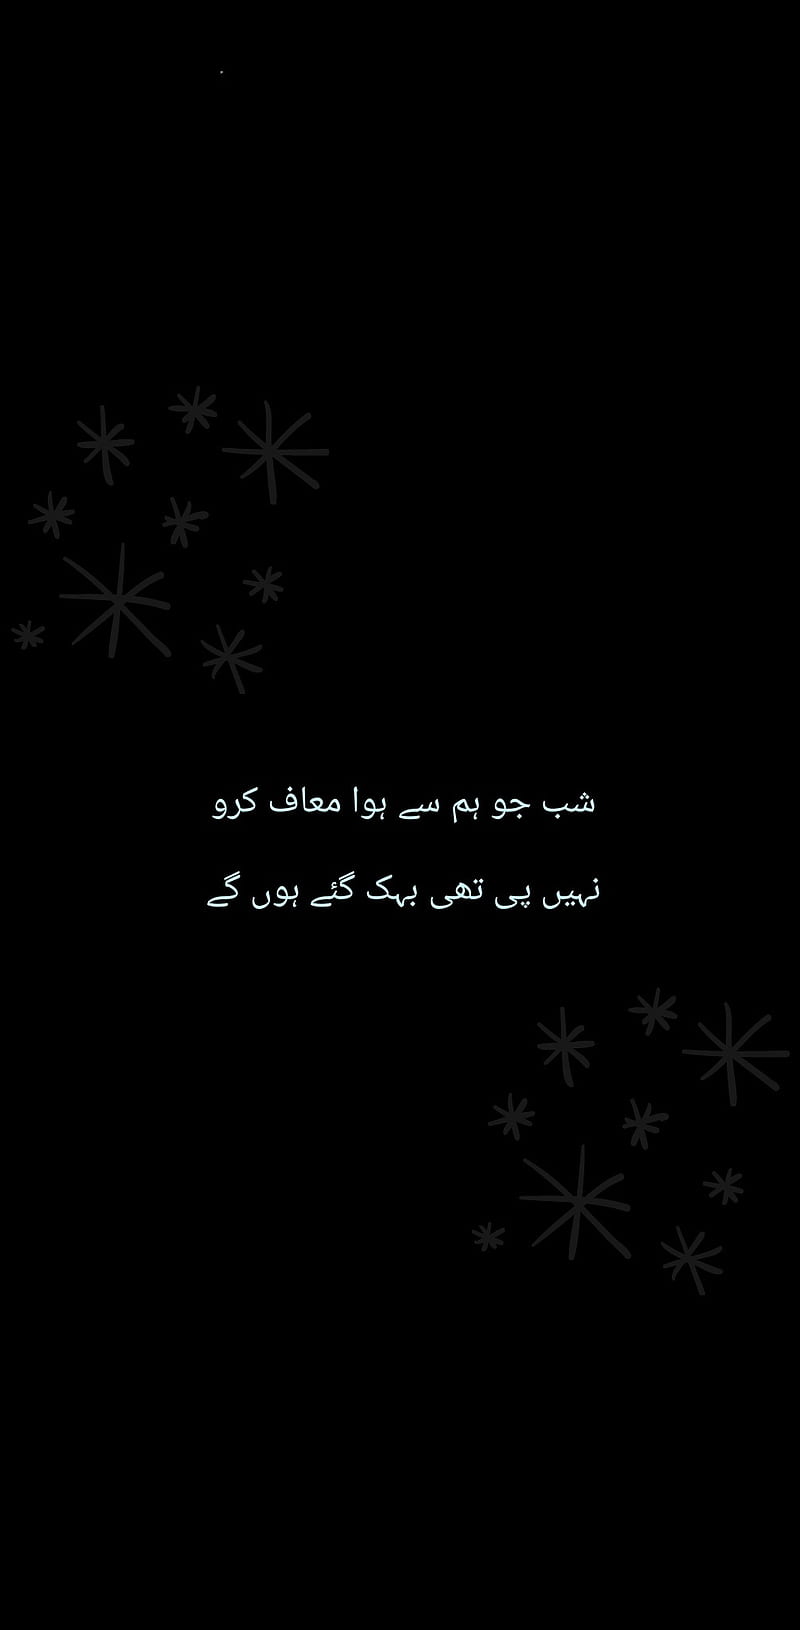 Trích dẫn, tình yêu, thơ Urdu nền đen sẽ đem đến cho bạn một phong cách sống thăng hoa, tươi đẹp và lãng mạn. Những câu thơ trong những hình nền đẹp này sẽ là nguồn cảm hứng cho bạn trong cuộc sống.